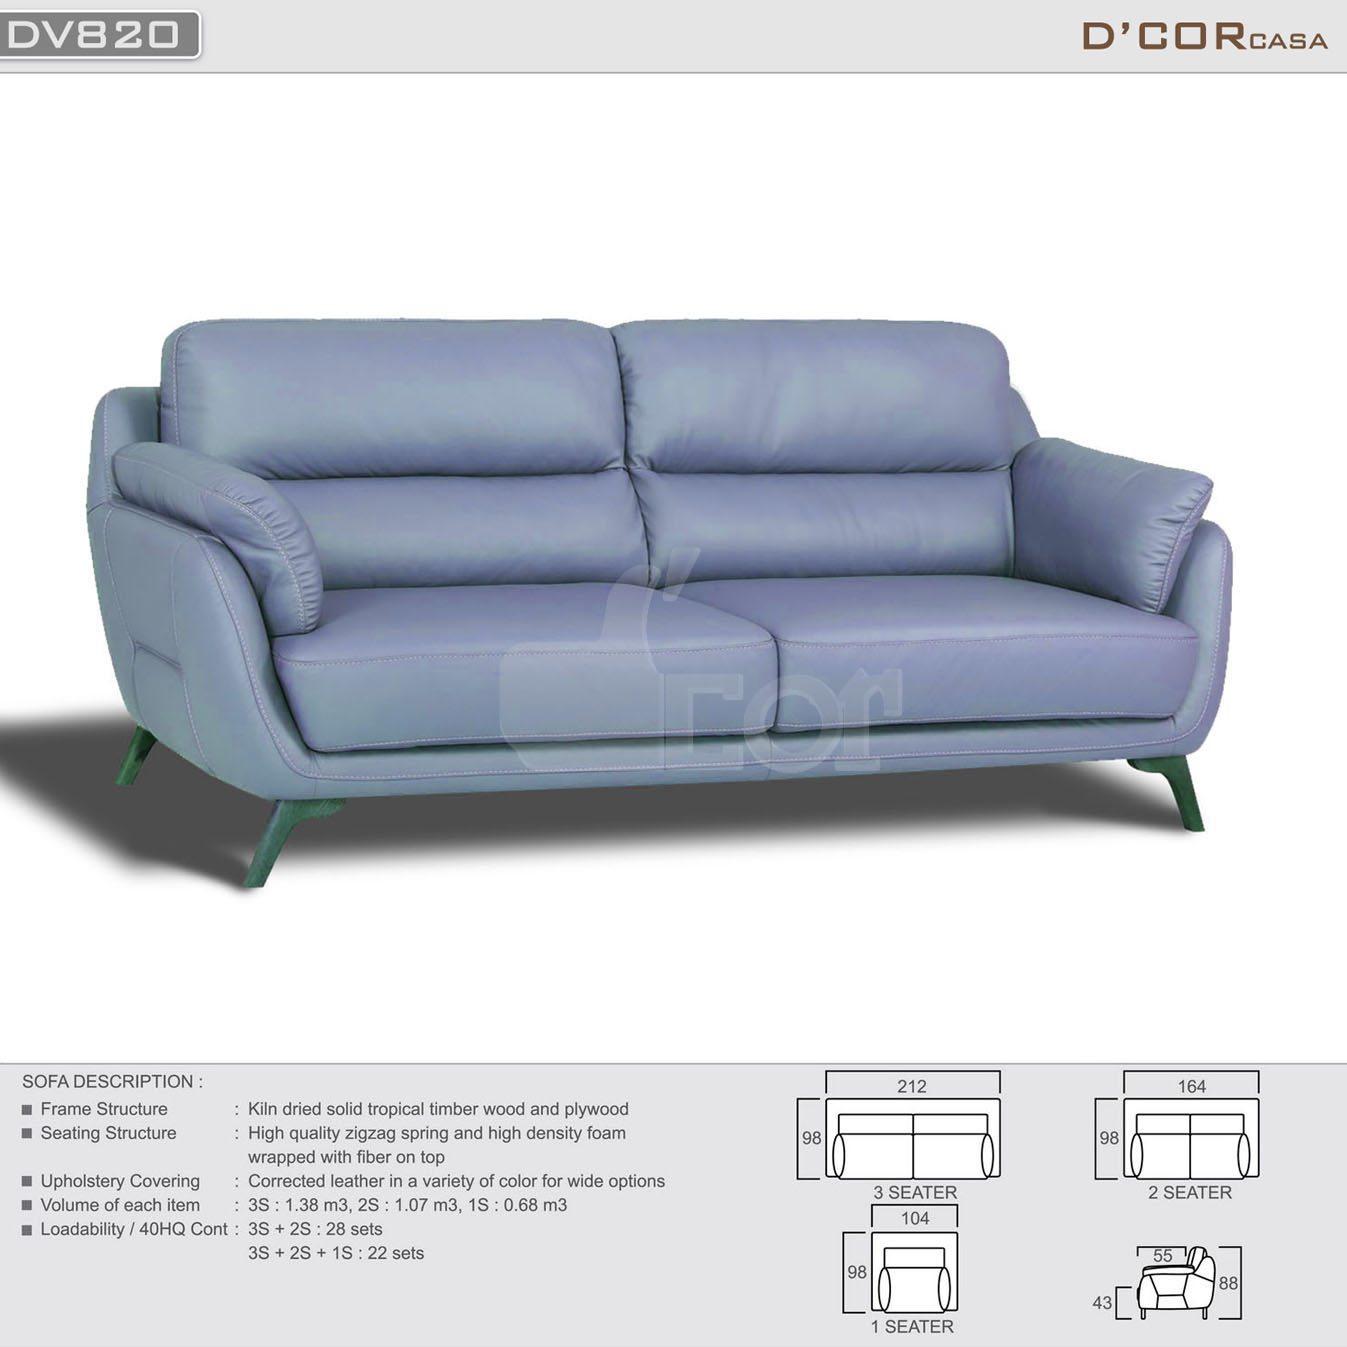 Ghế sofa da thật nhập khẩu giá rẻ nhất thị trường Hà Nội: DV820